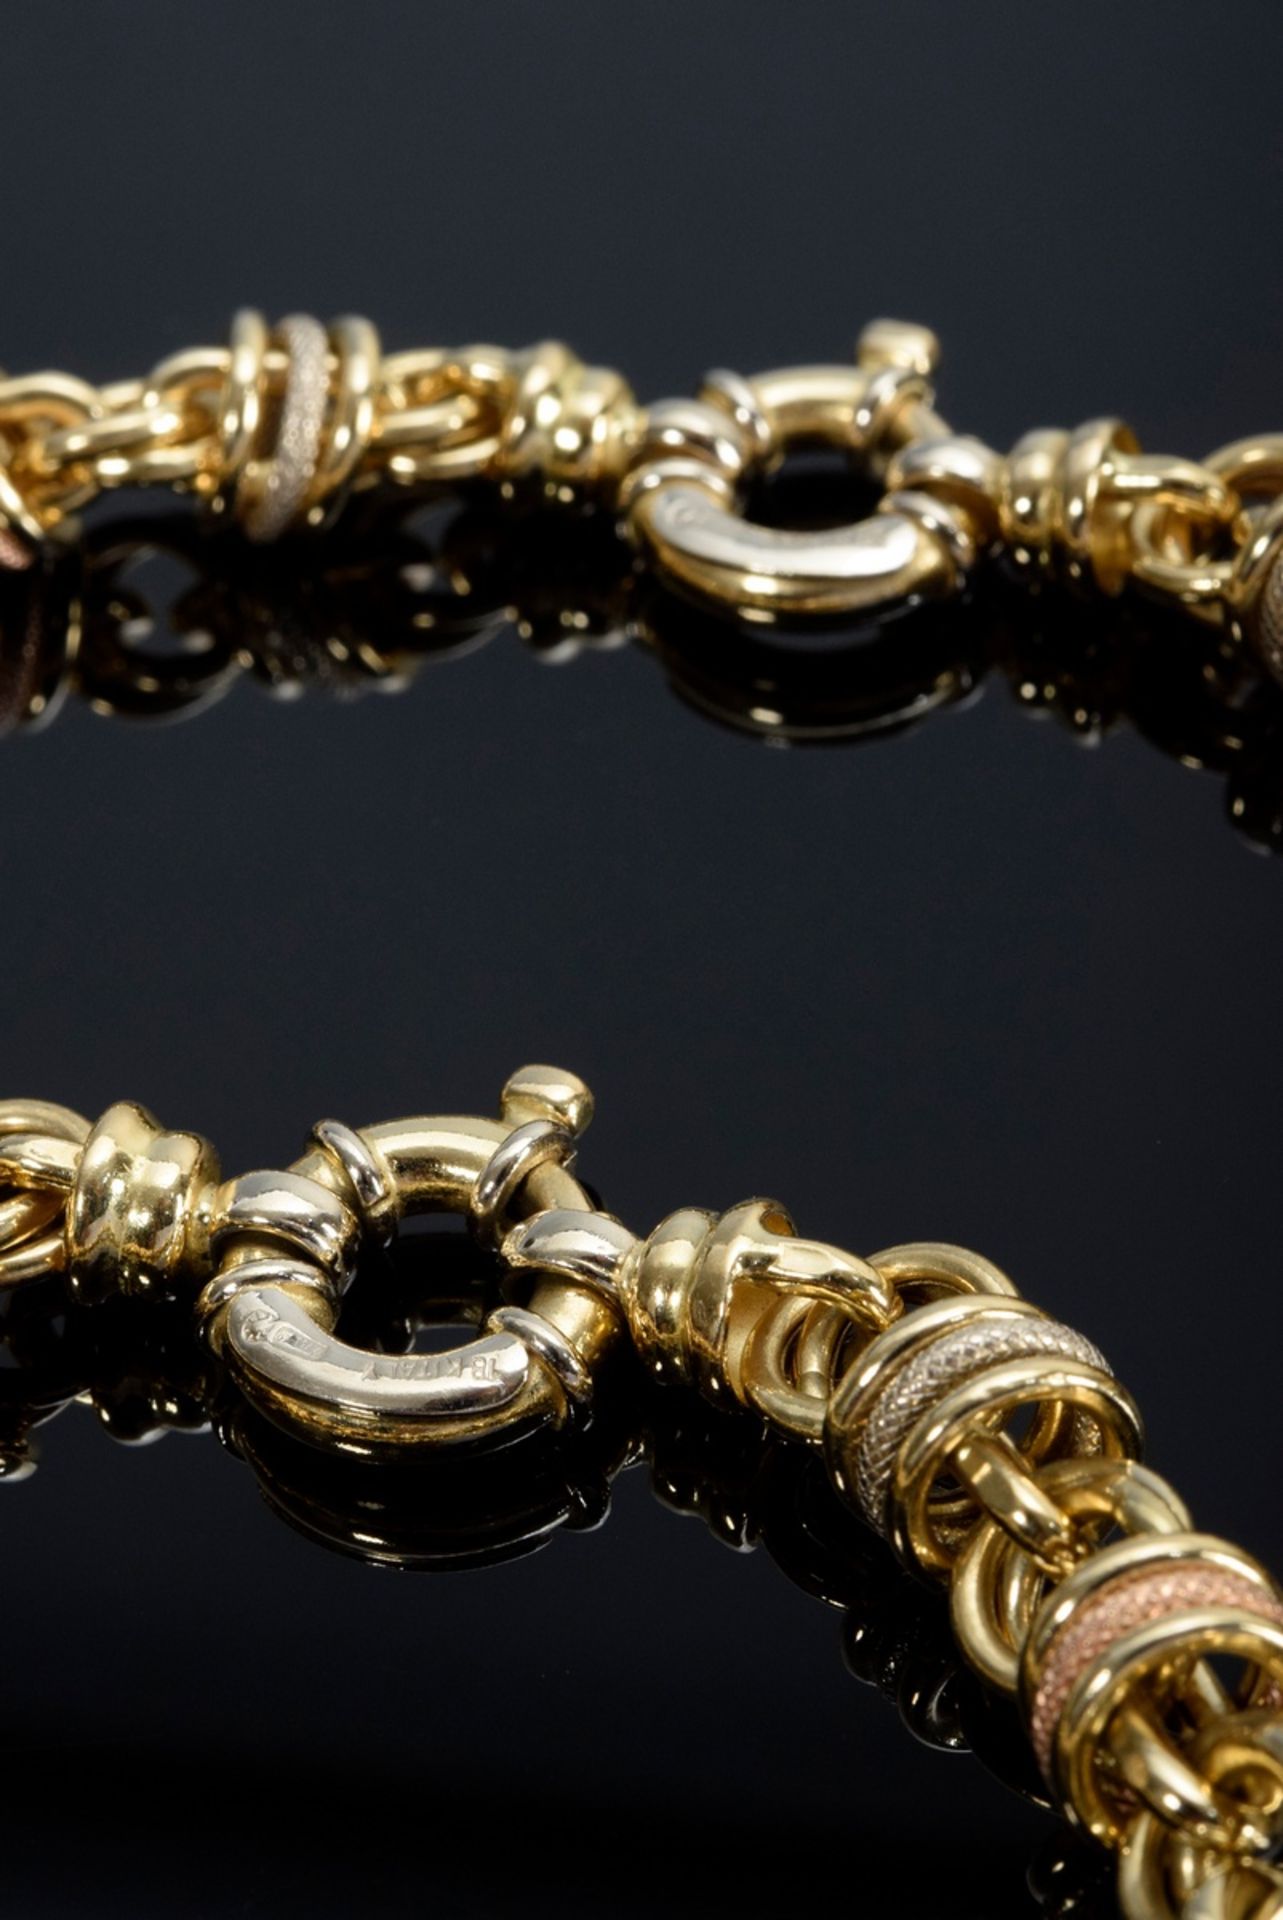 2 Teile diverser Tricolor Gold 750 Schmuck aus sich beweglichen Ringen: Collier (L. 45cm) und Armba - Bild 3 aus 3